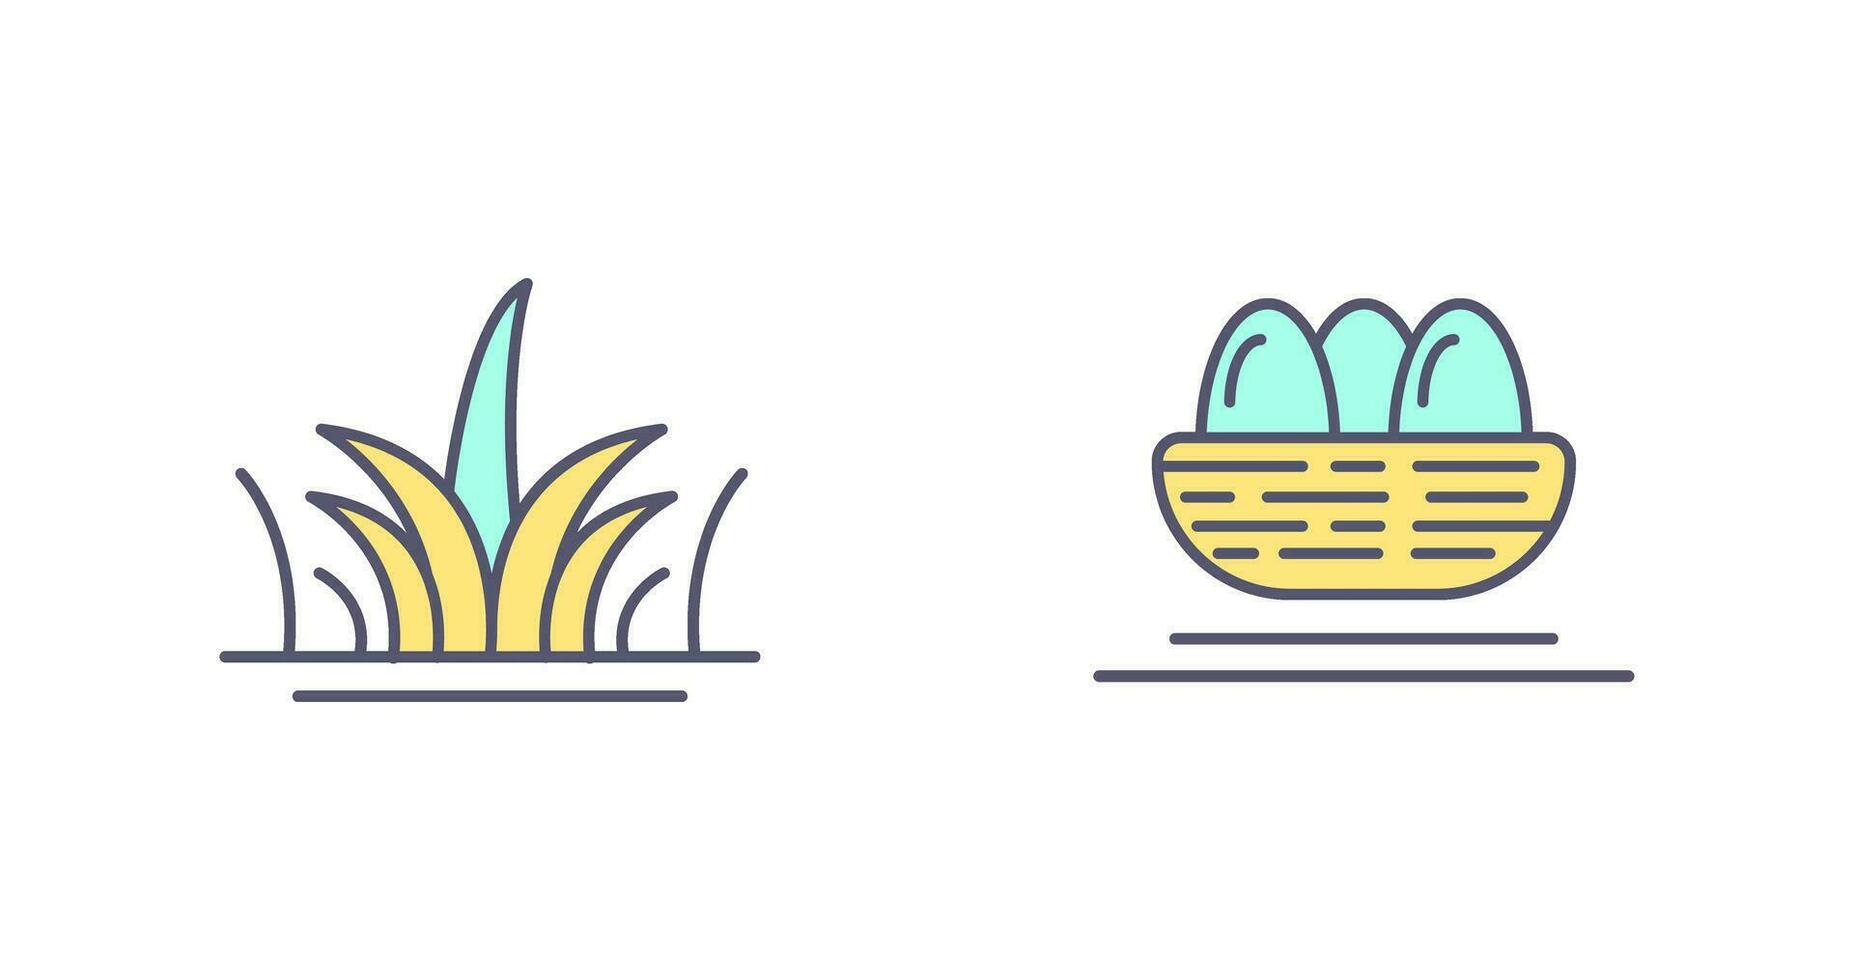 gräs och ägg ikon vektor